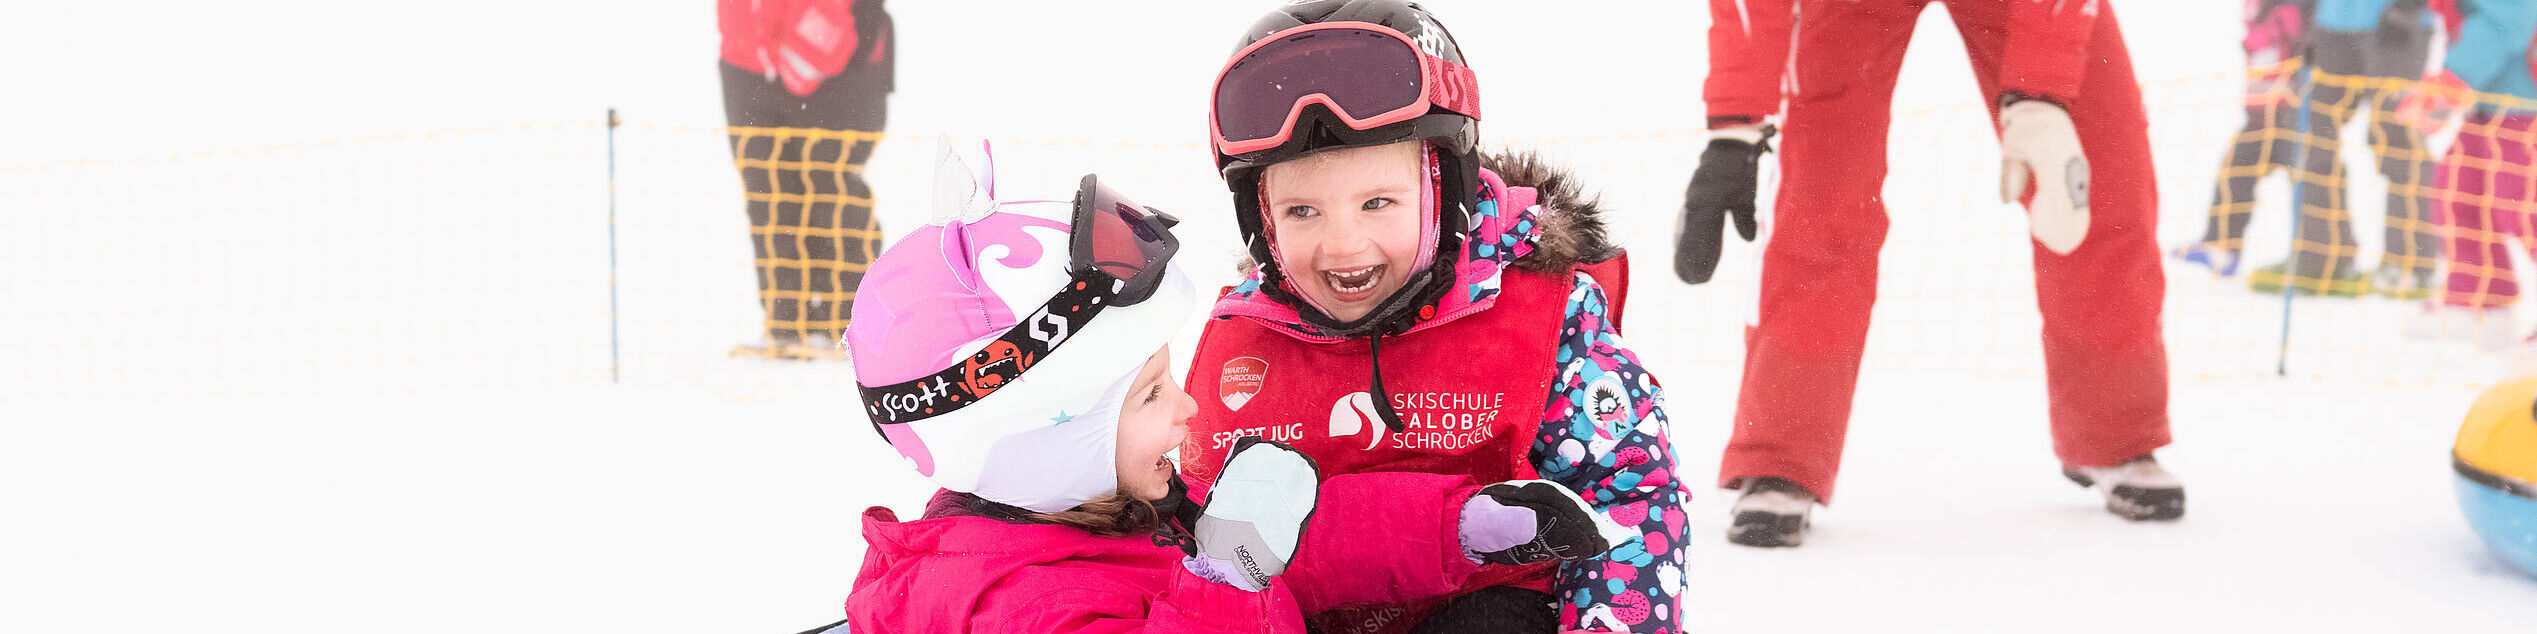 Twee lachende kinderen zitten in een sneeuwband die door een skileraar is geduwd